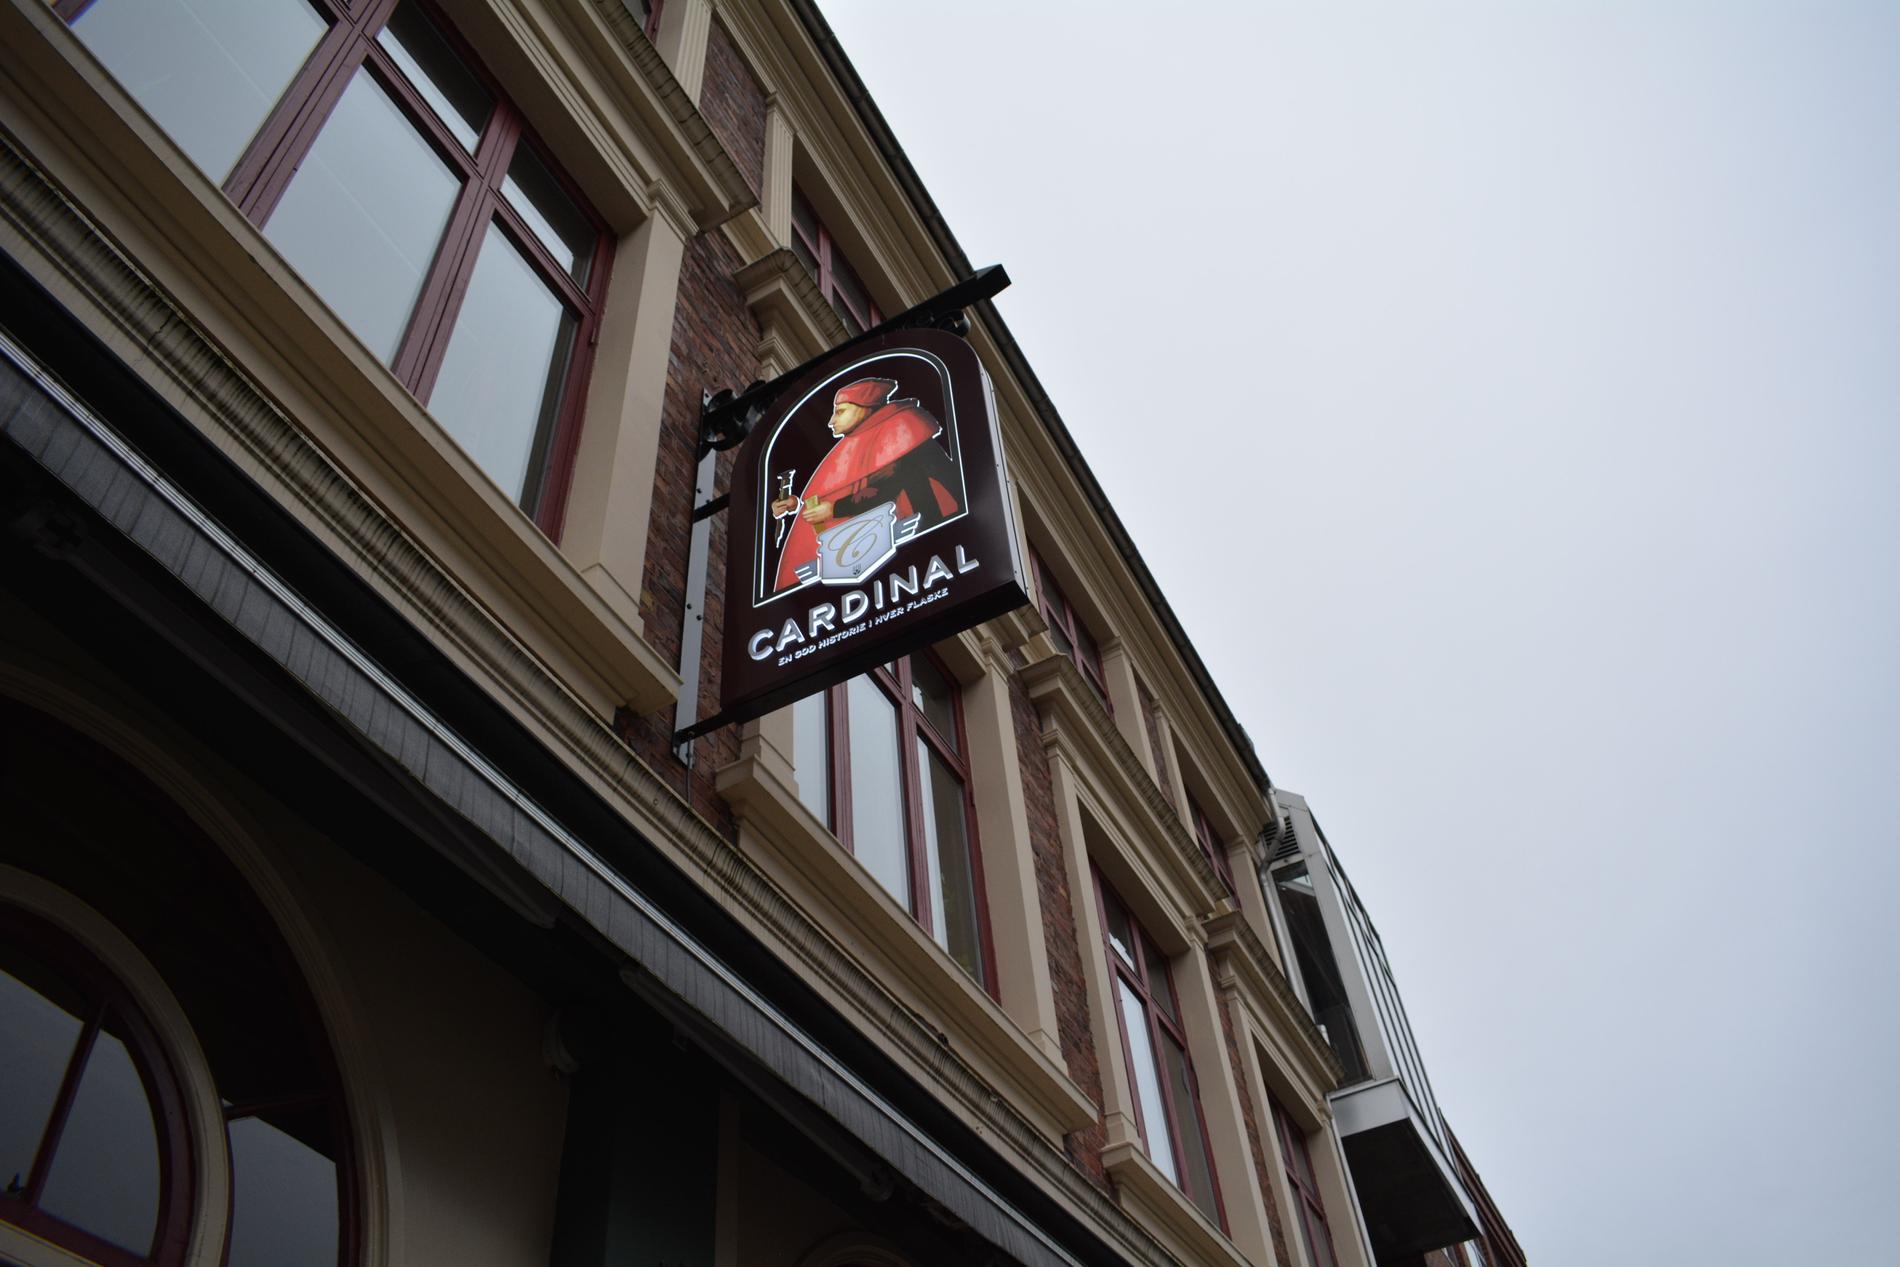 Ifølge Sivertsen er Cardinal noe av det som gjør Stavanger til Norges øl-hovedstad.